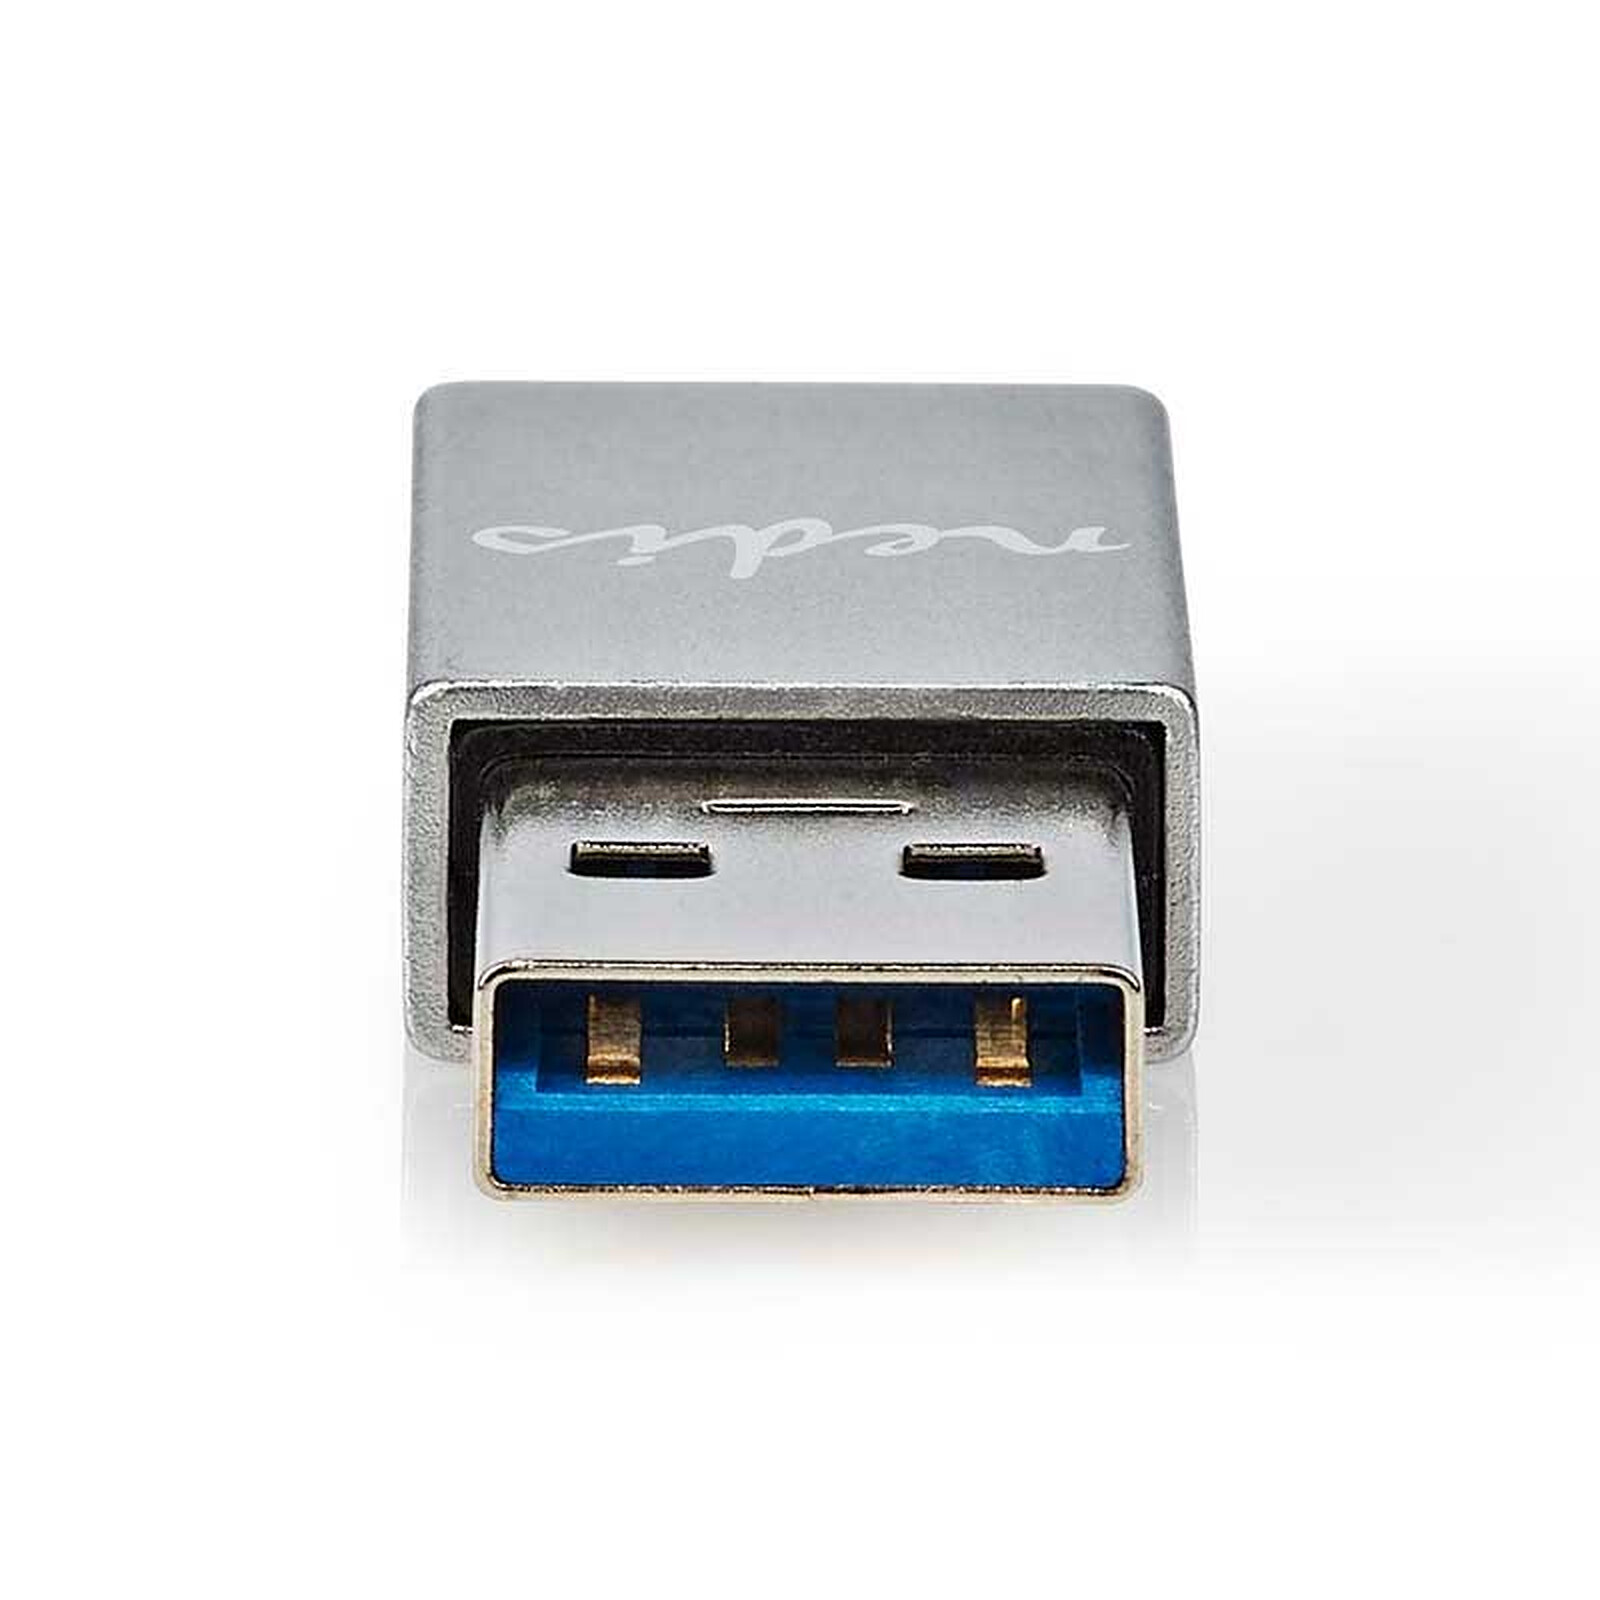 Nedis Adaptateur réseau USB-C / RJ45 - Carte réseau - Garantie 3 ans LDLC